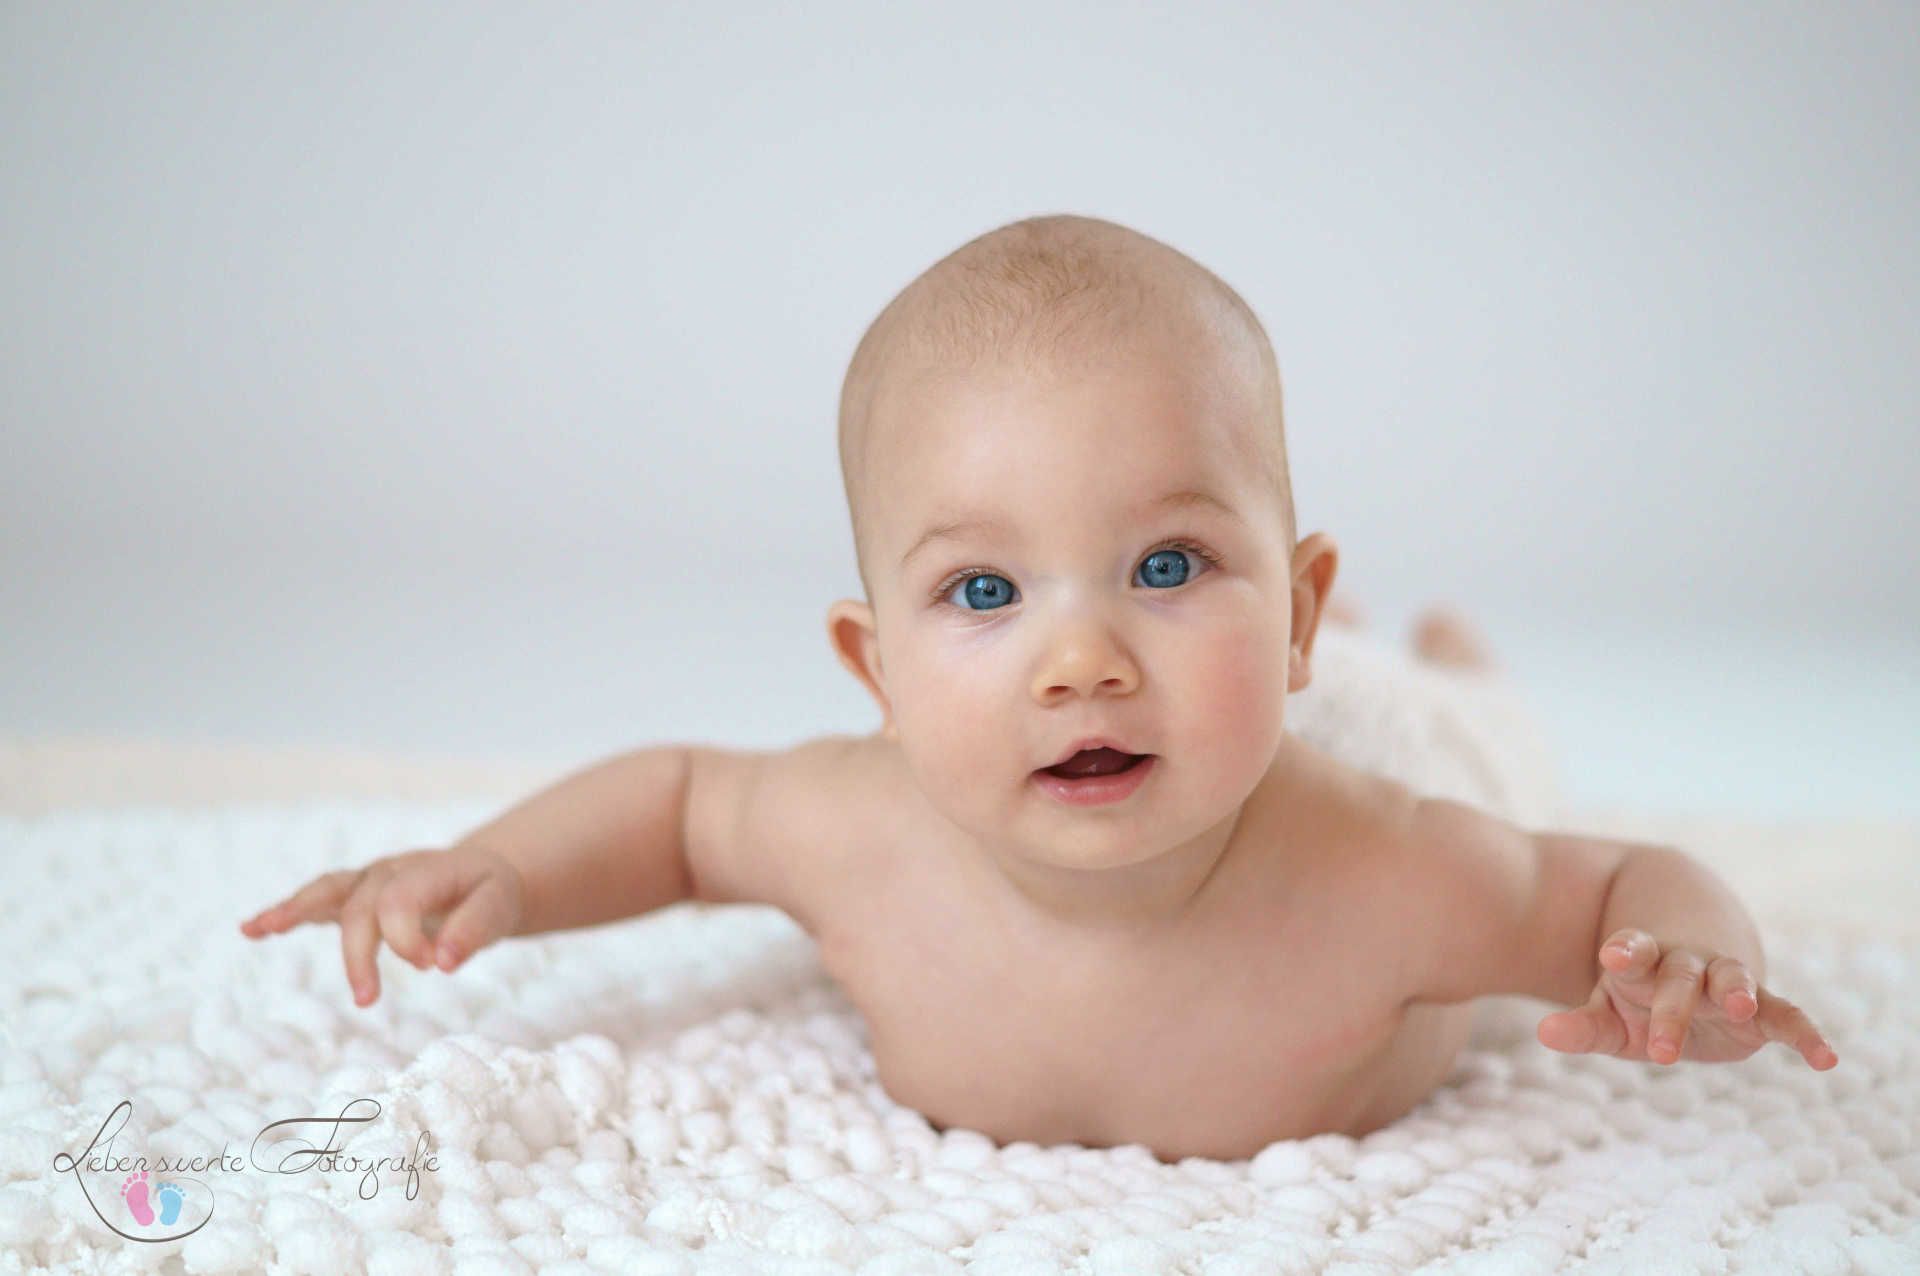 Babyfotografie©liebenswerte-fotografie_35